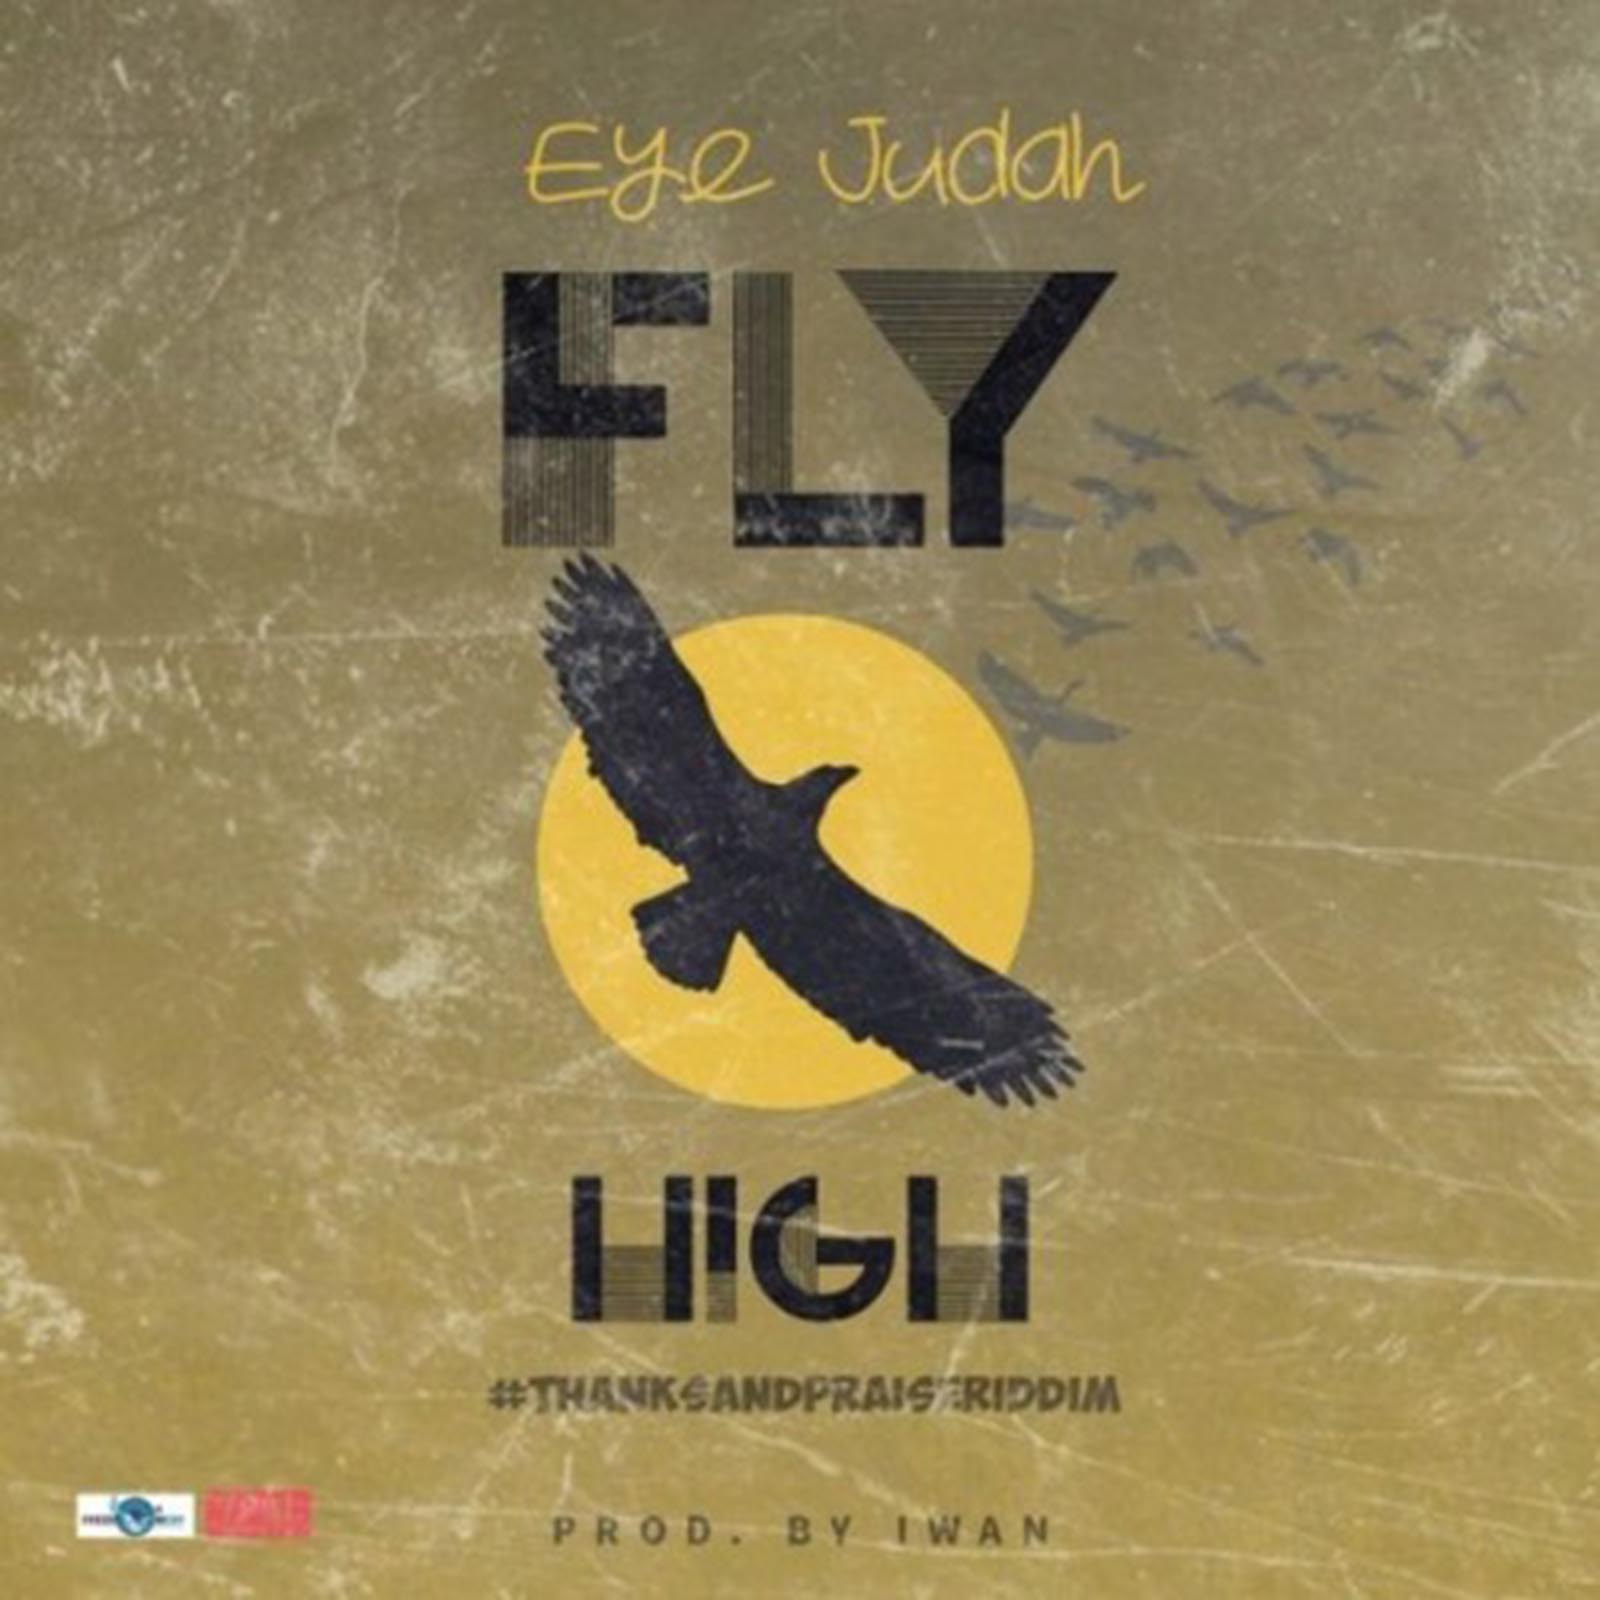 Fly High (Thanks and Praise Riddim) by Eye Judah